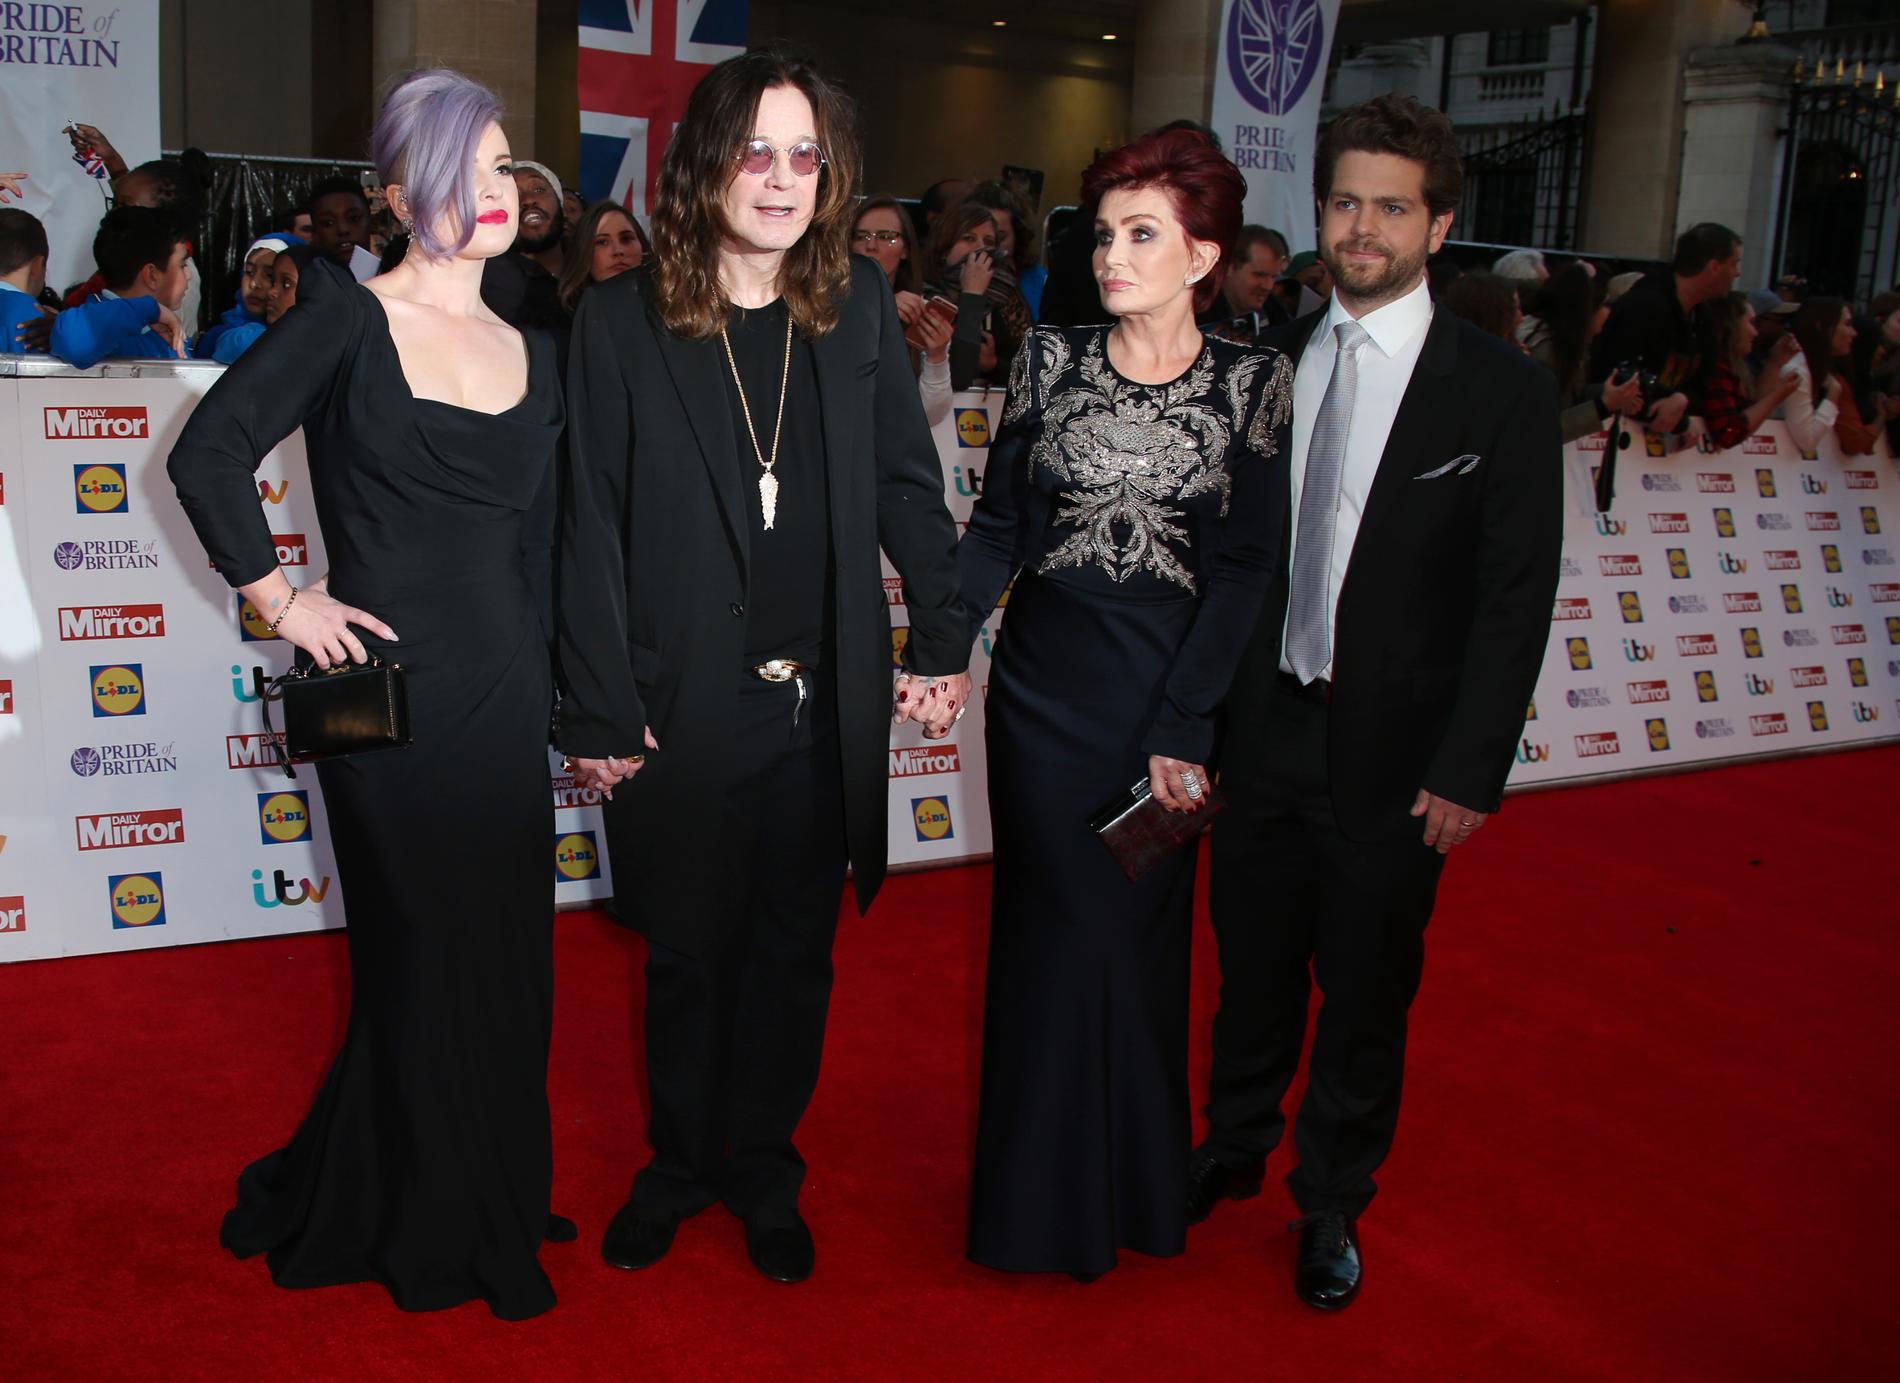 Från vänster; Kelly Osbourne, Ozzy Osbourne, Sharon Osbourne och Jack Osbourne.